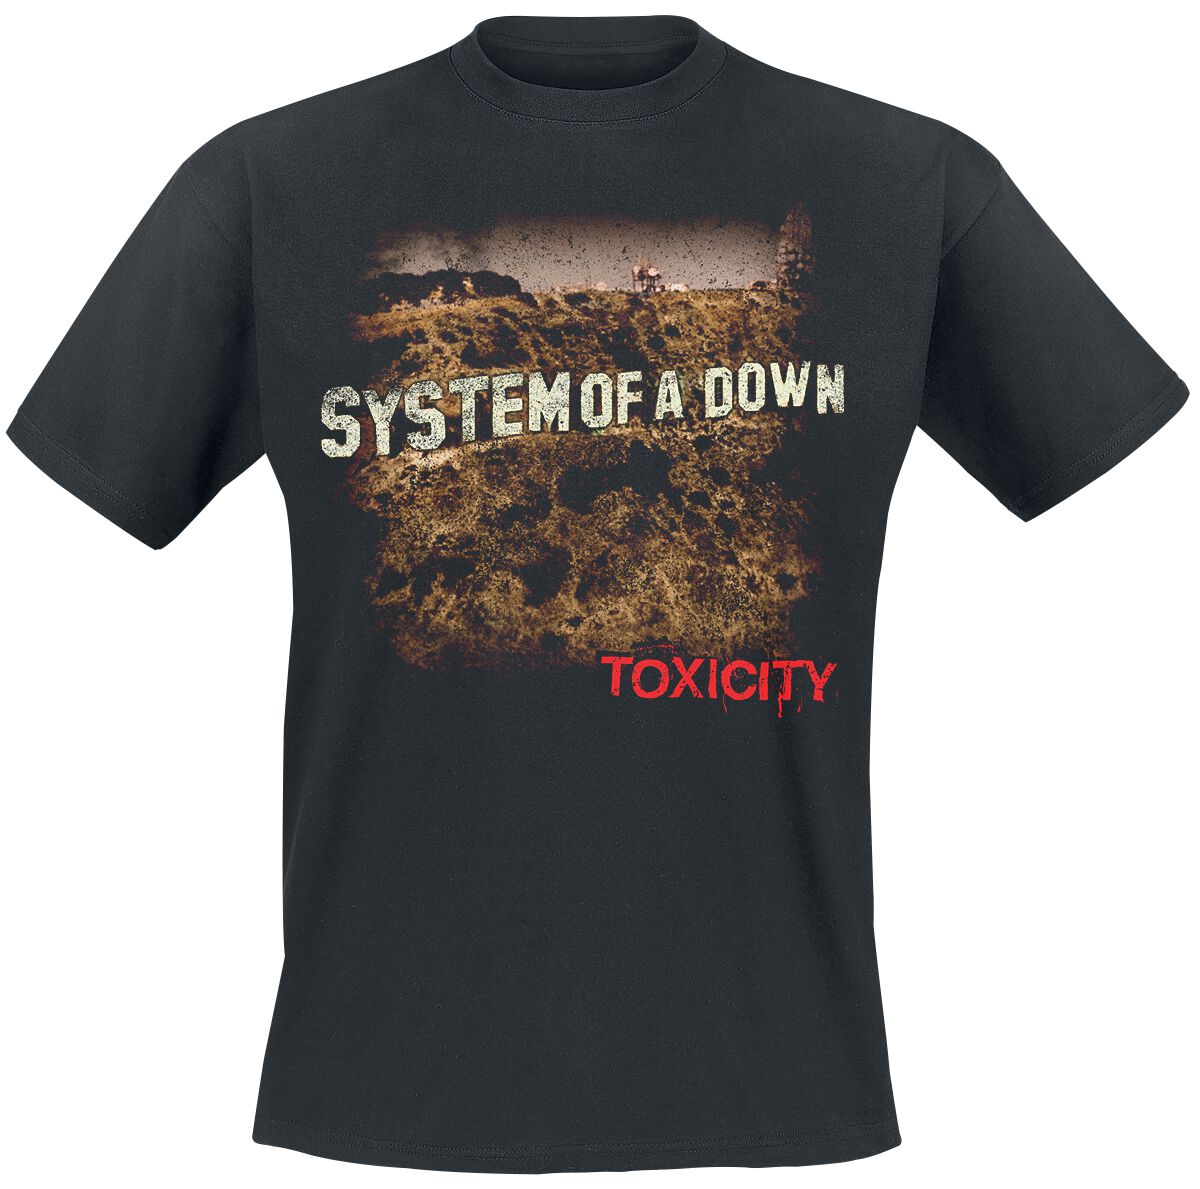 System Of A Down T-Shirt - Toxicity - S bis XXL - für Männer - Größe XL - schwarz  - Lizenziertes Merchandise!